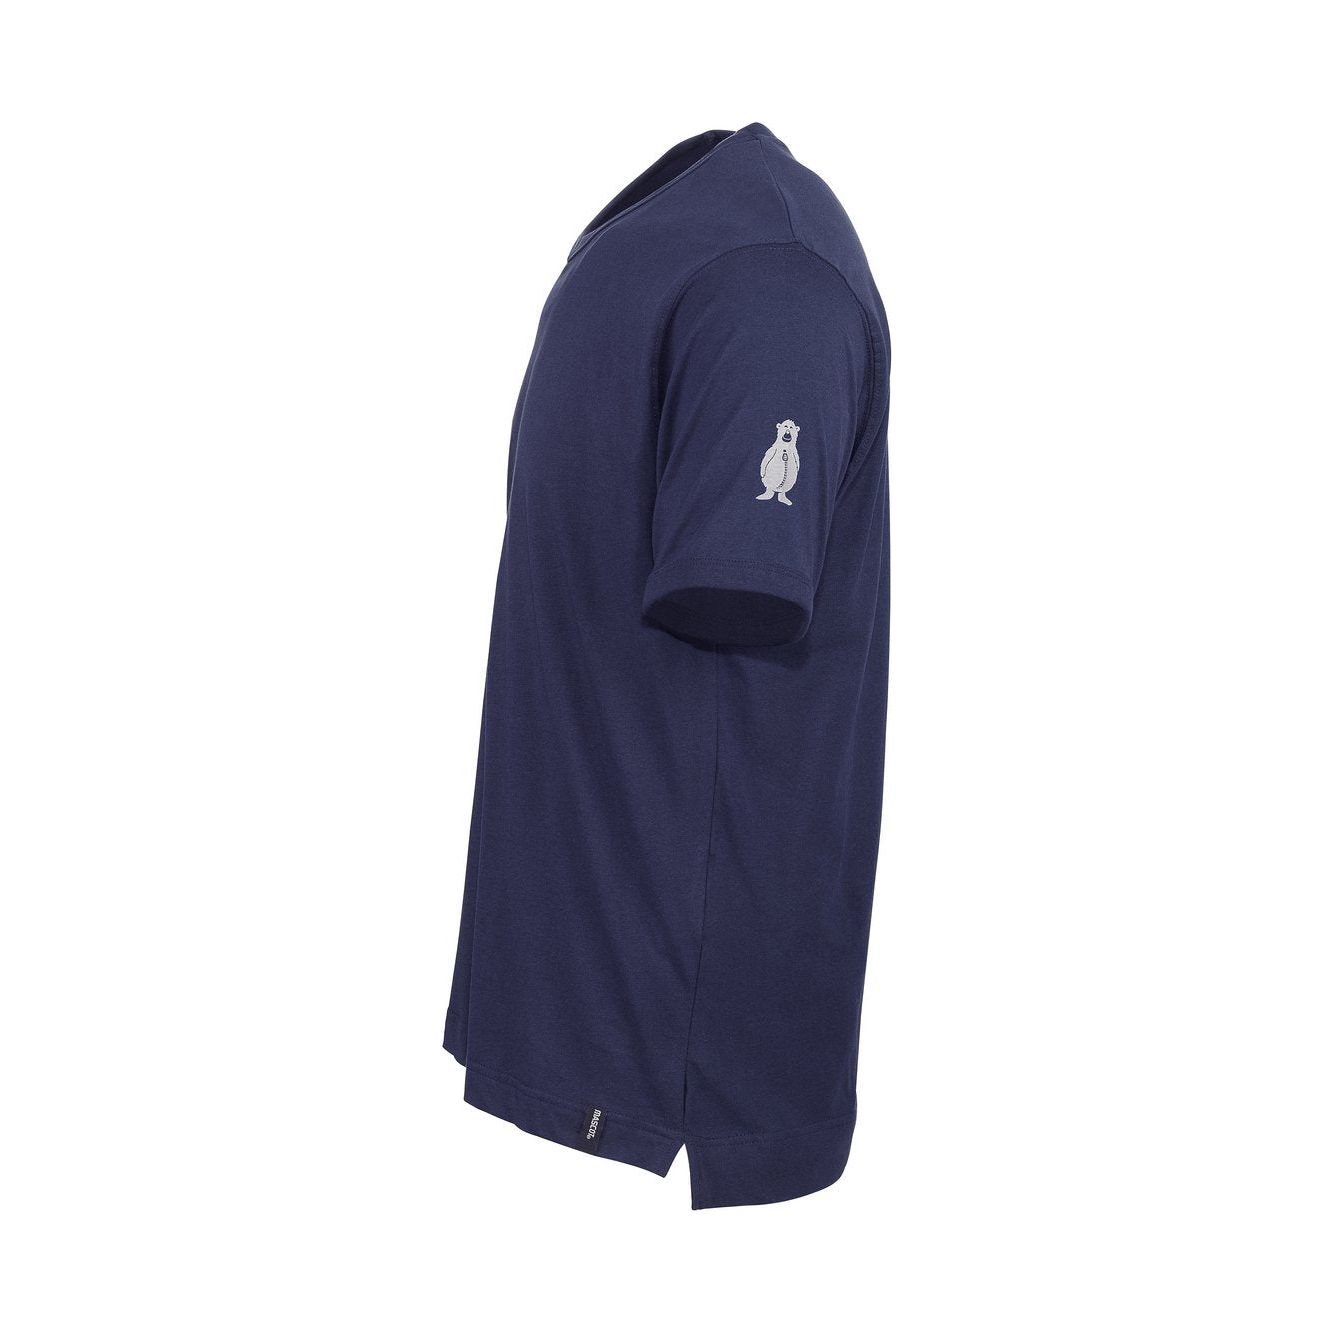 Mascot Algoso T-shirt V-Neck Navy Blue 50415-250-01 Side